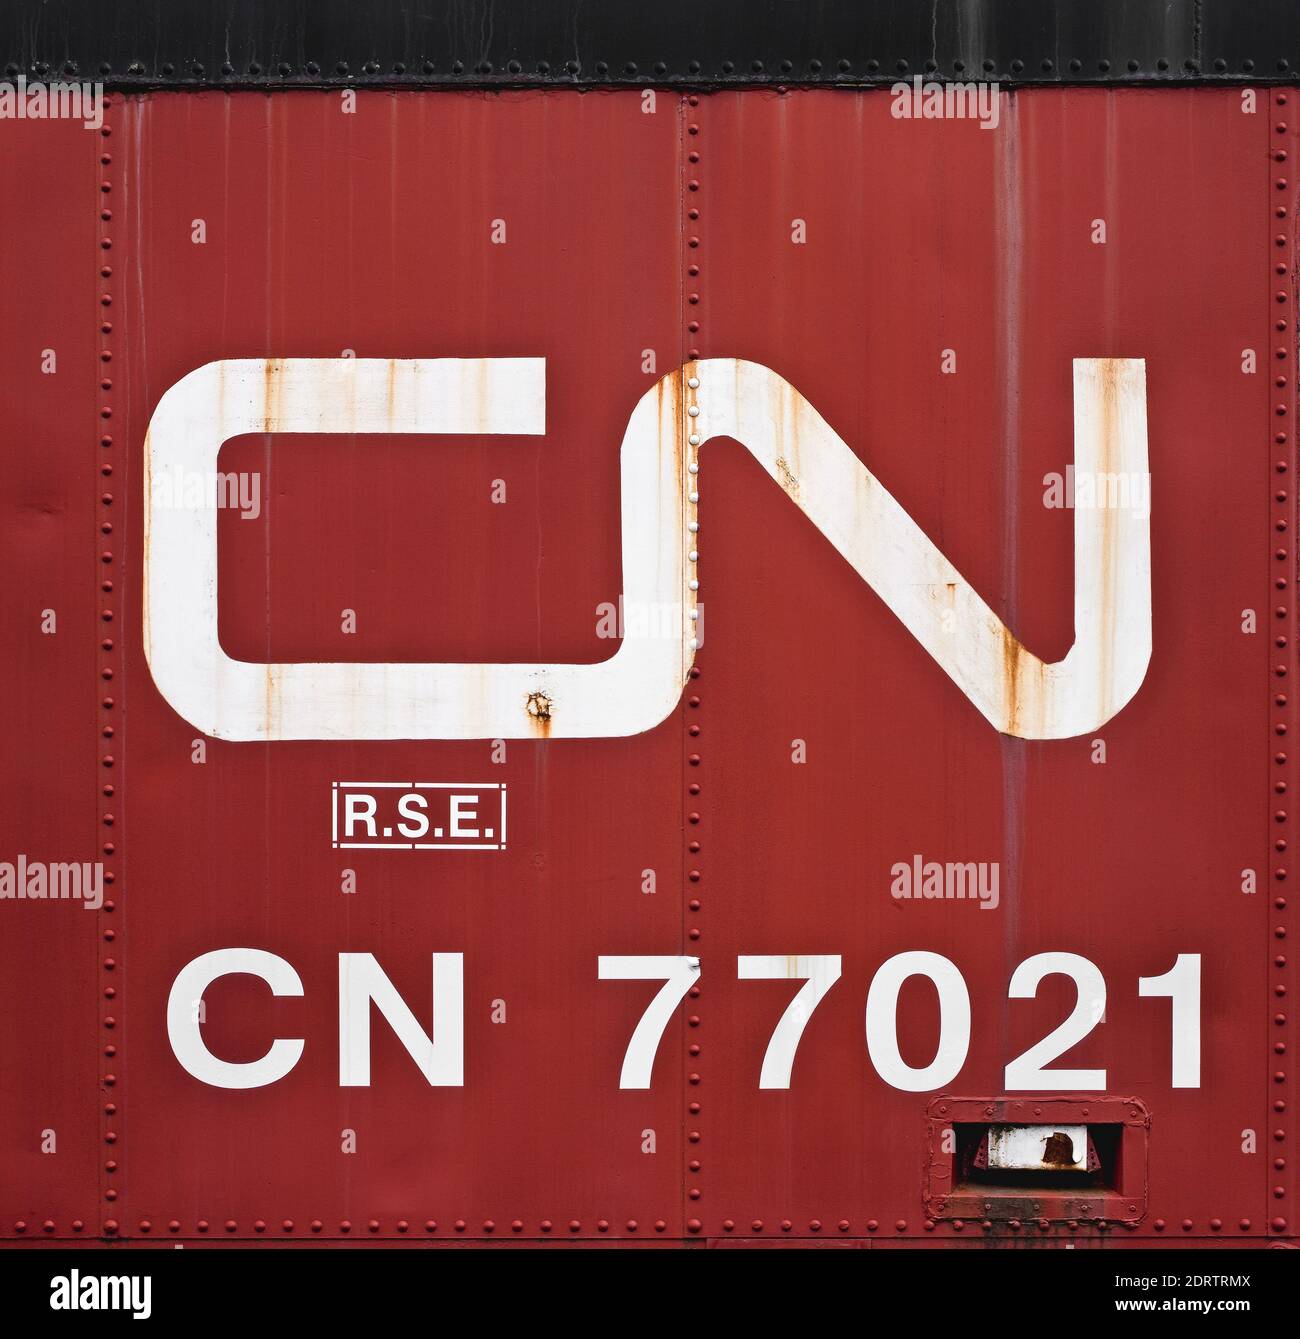 Tatamagouche, Kanada - 04. Mai 2016: Logo der Canadian National Railway Company auf dem Güterwagen. CN ist in Kanada und Teilen der USA tätig. Stockfoto